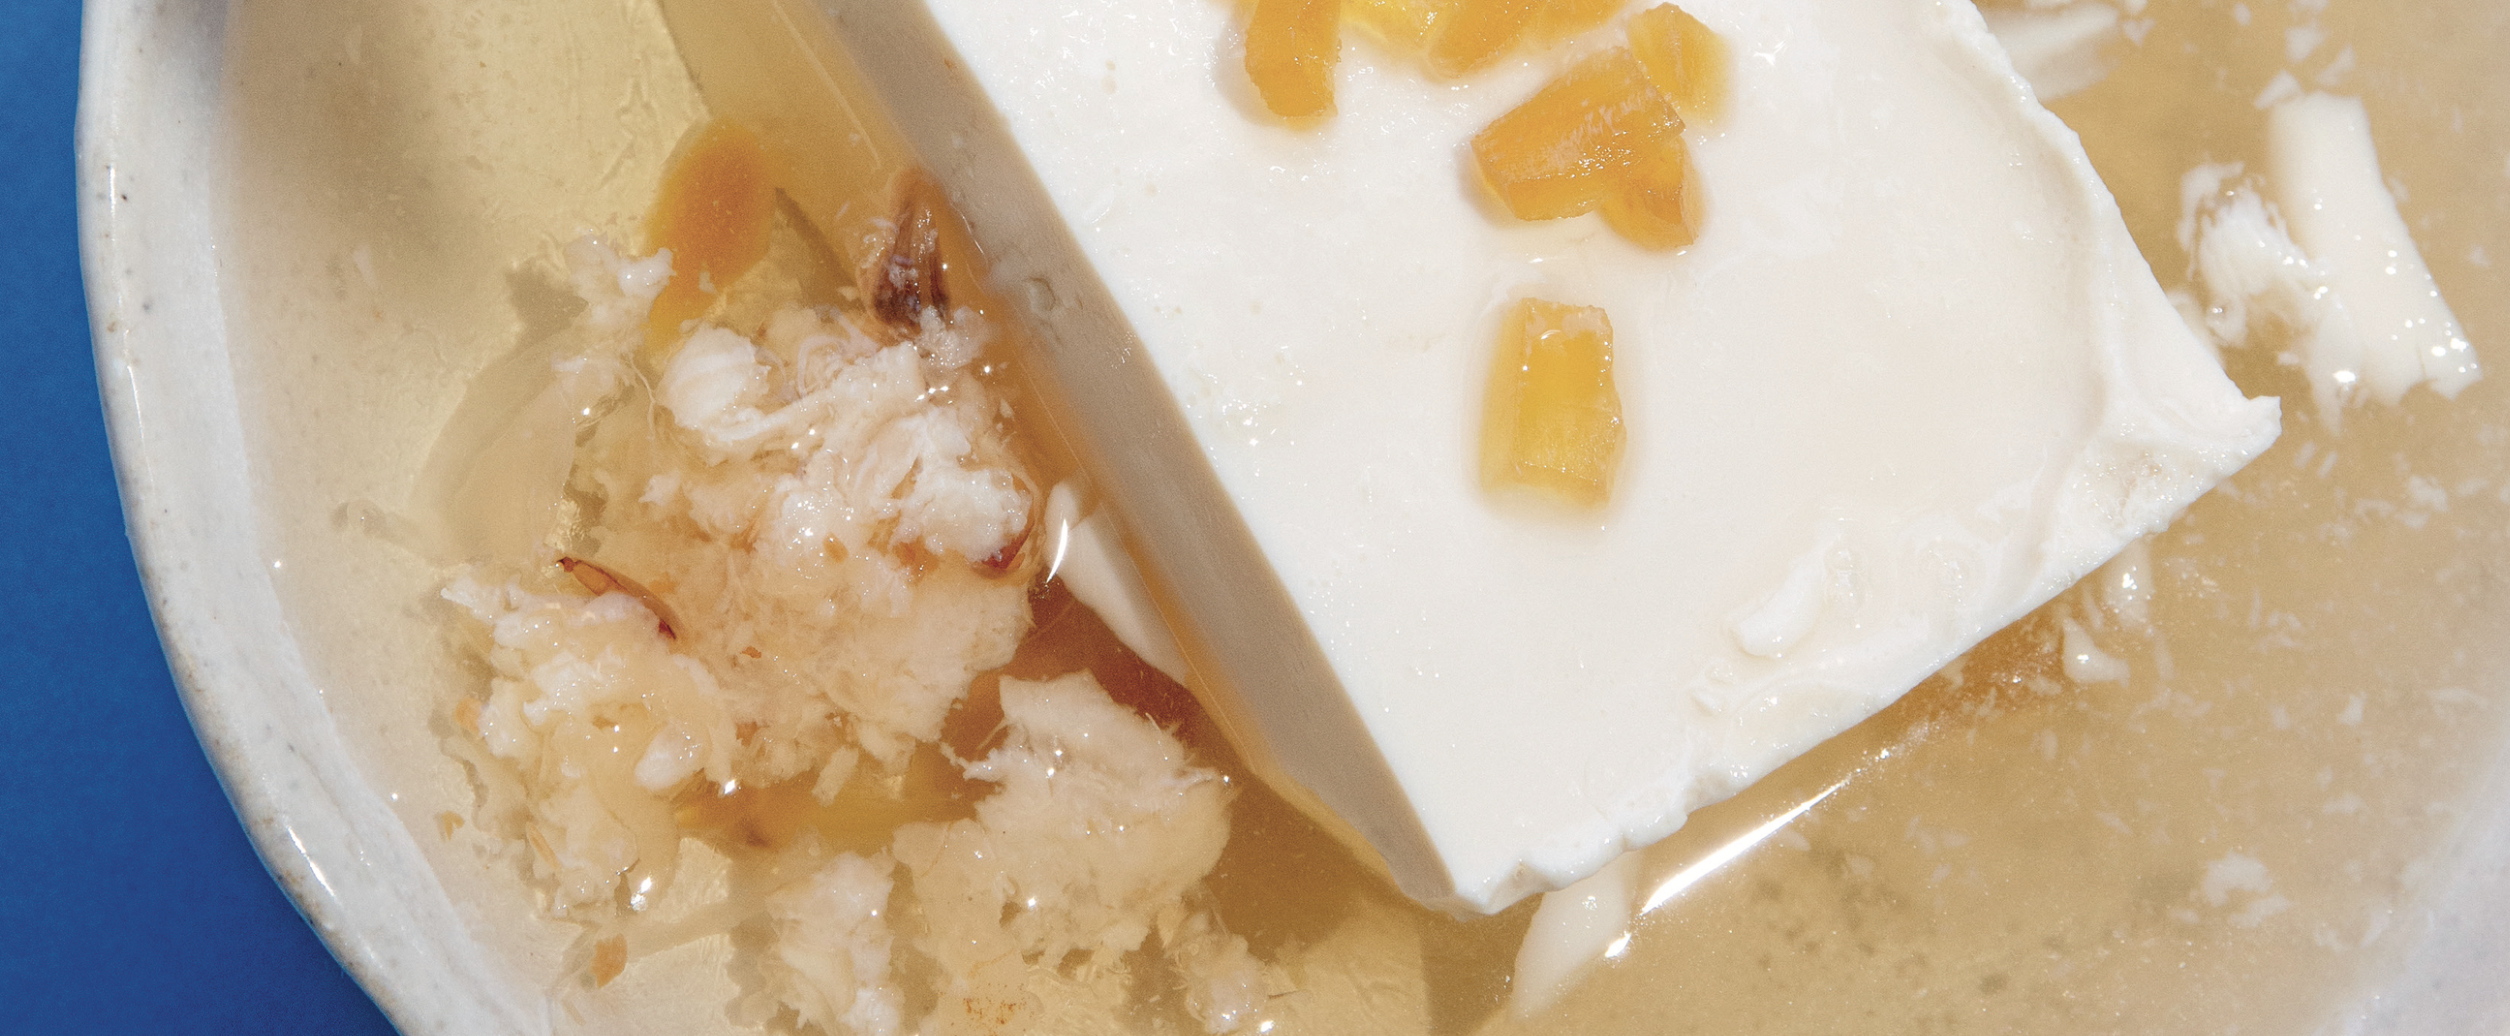 Recette : Dessert au tofu soyeux « arrangé » - Home magazine